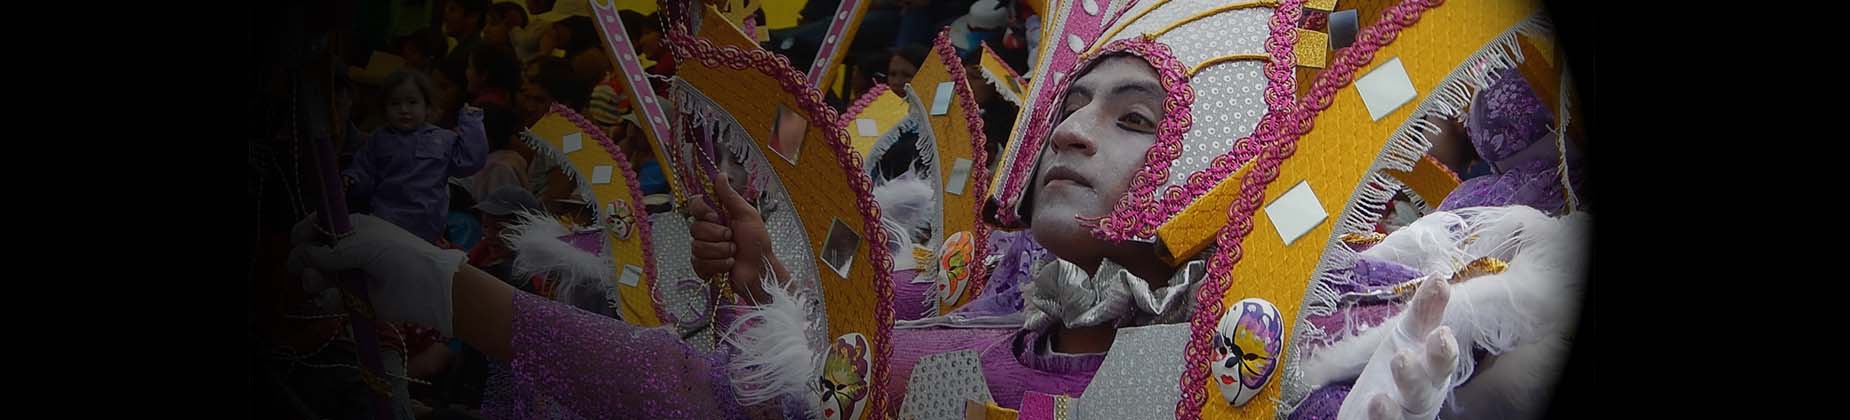 carnavales en Peru